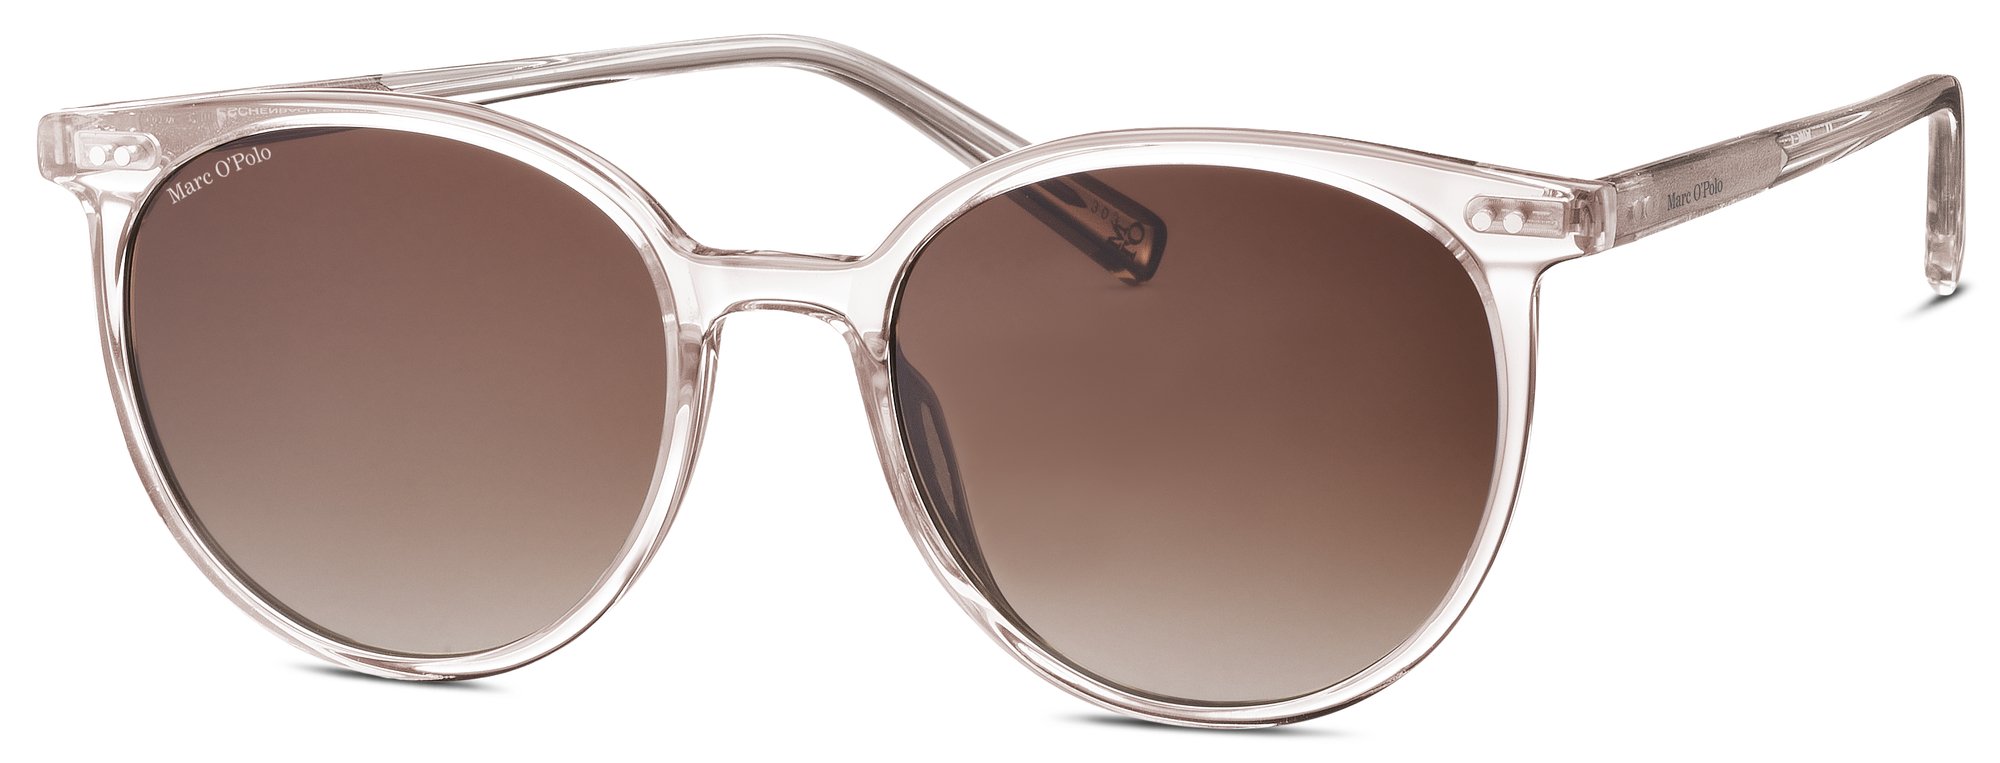 Das Bild zeigt die Sonnenbrille 506164 80 von der Marke Marc O‘Polo in nude transparent.